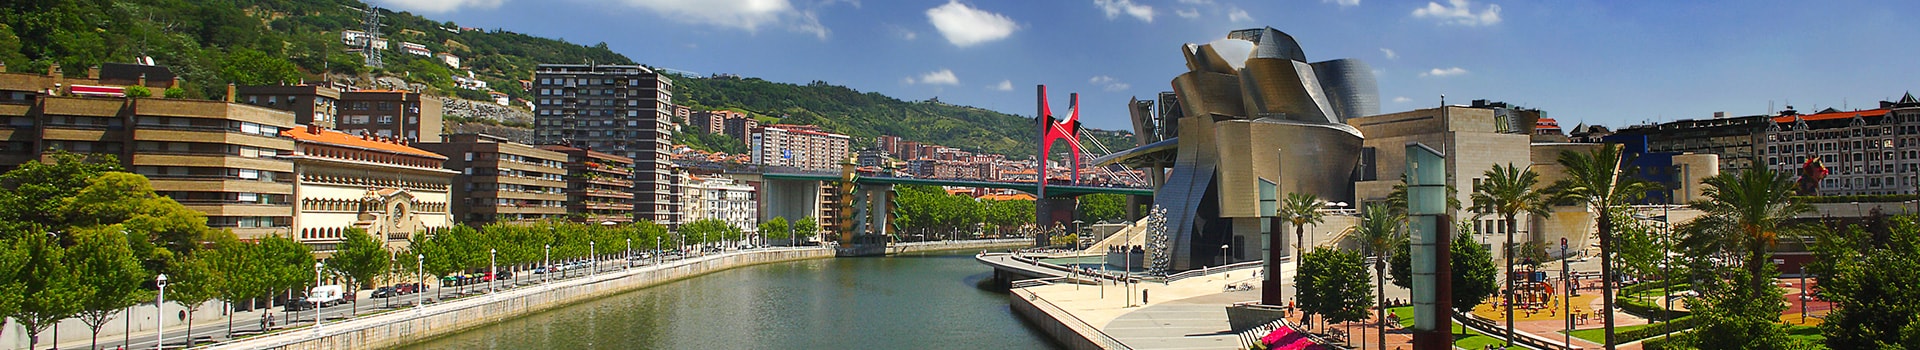 Alicante - Bilbao